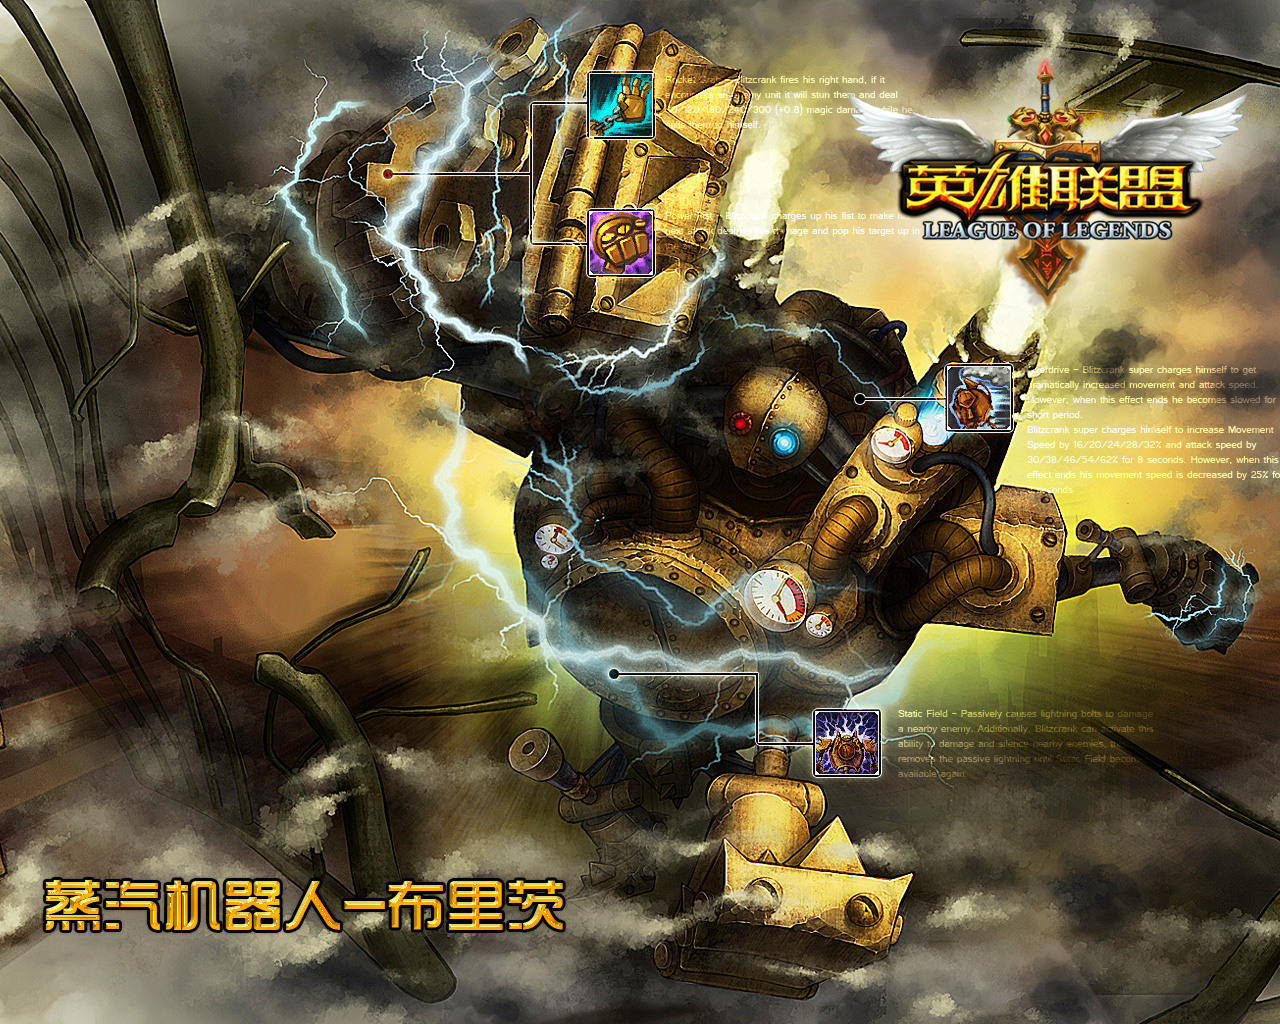 壁纸下载 英雄联盟官方网站 腾讯游戏